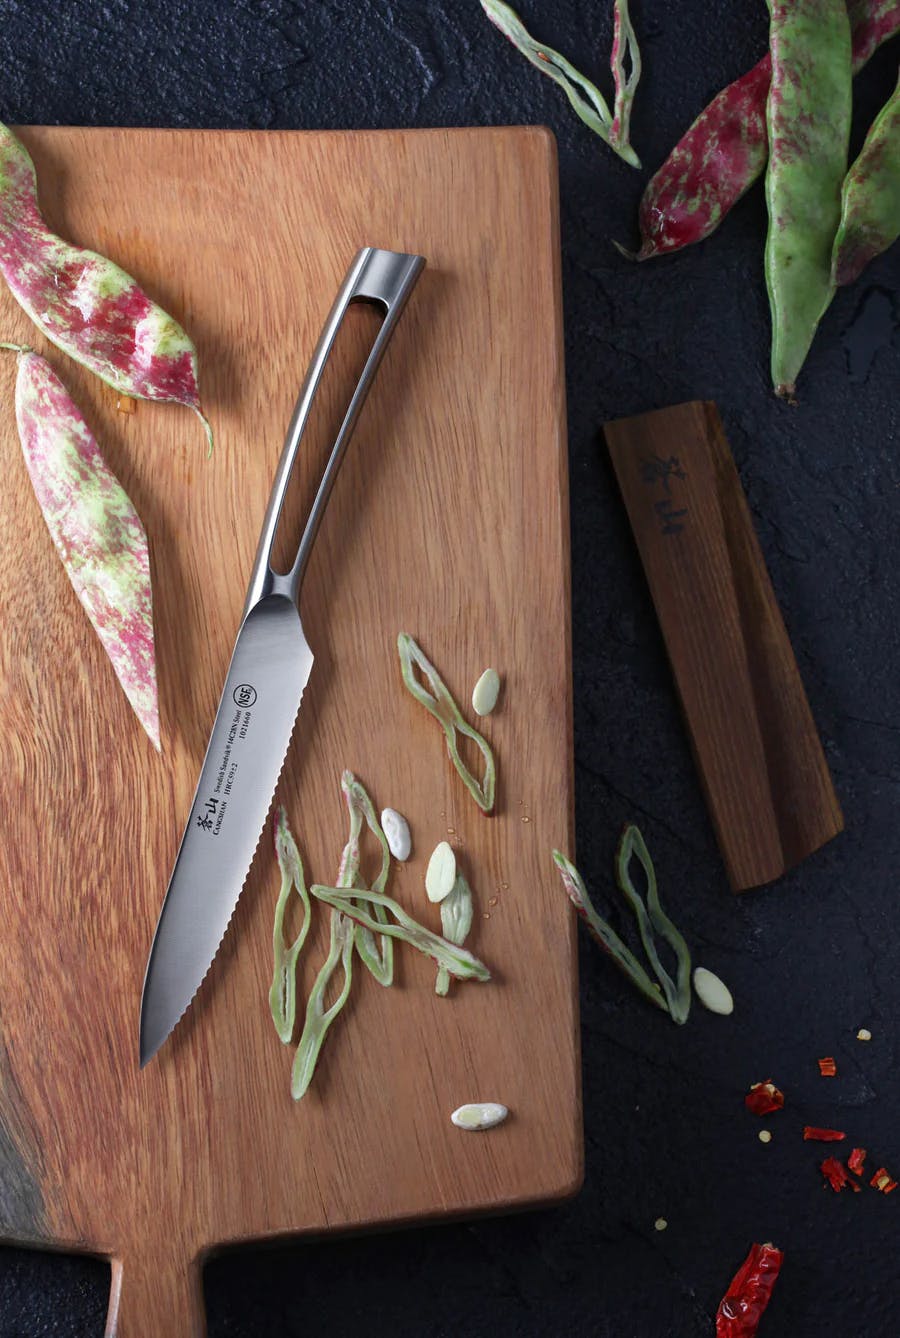 Cangshan TN1 Series Swedish Steel 14C28N 8 Chef Knife